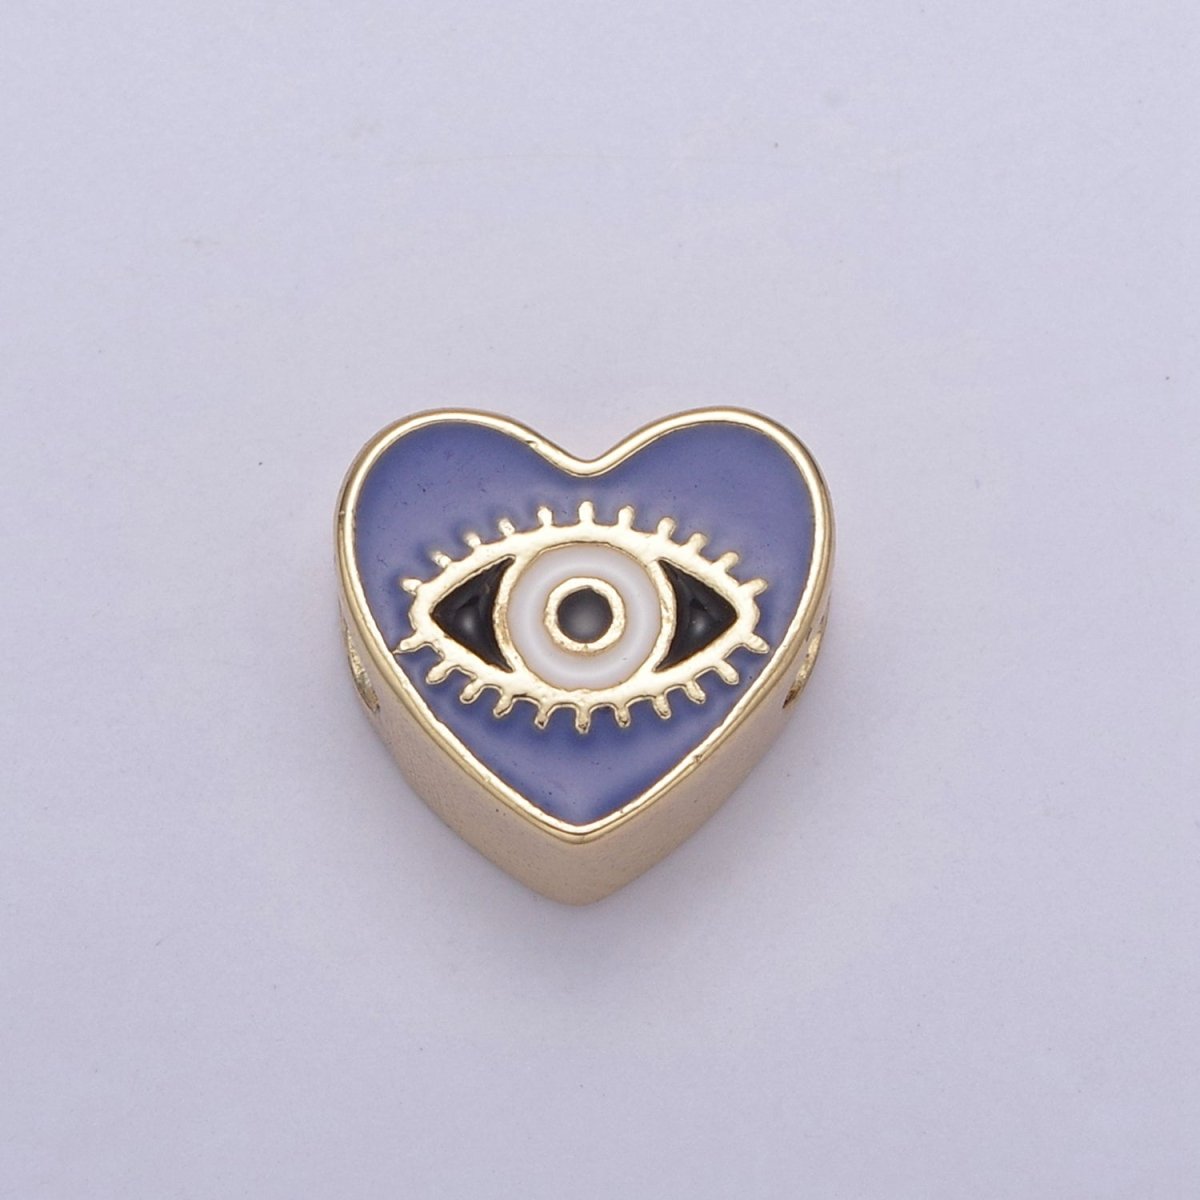 10mm Evil eye beads, Heart eye jewelry beads, Heart beads, Black Blue White Enamel bead spacer for Bracelet Component B-167 B-190 B-206 - DLUXCA